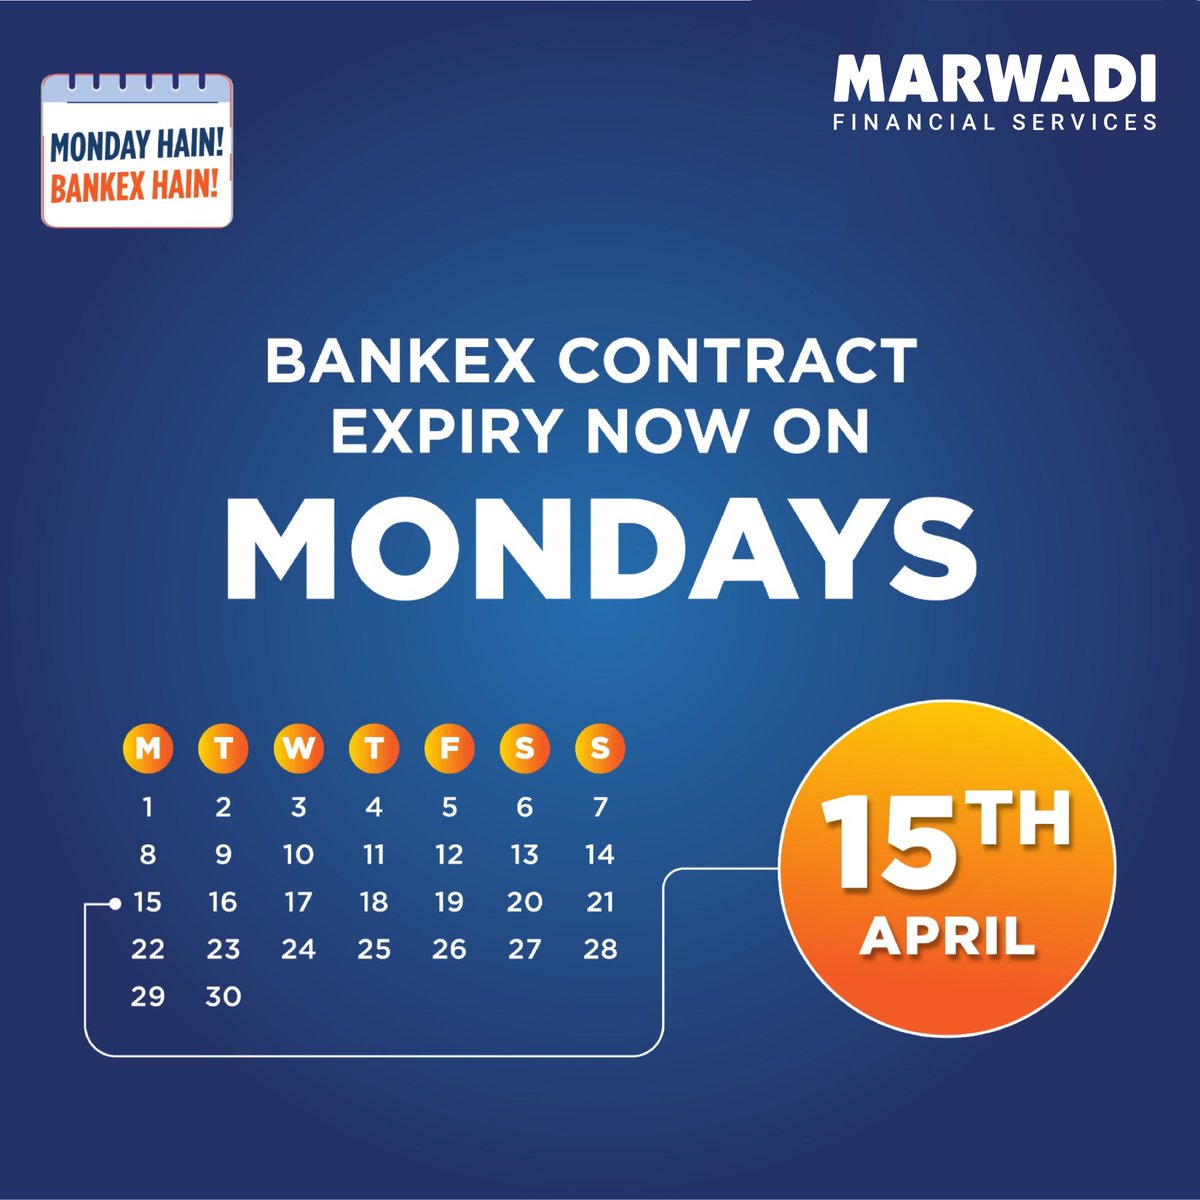 Bankex contract expiry now on Monday!
@BSEIndia

#BANKEX #BSEINDIA #MSFLHQ #MSFLHO #MSFL